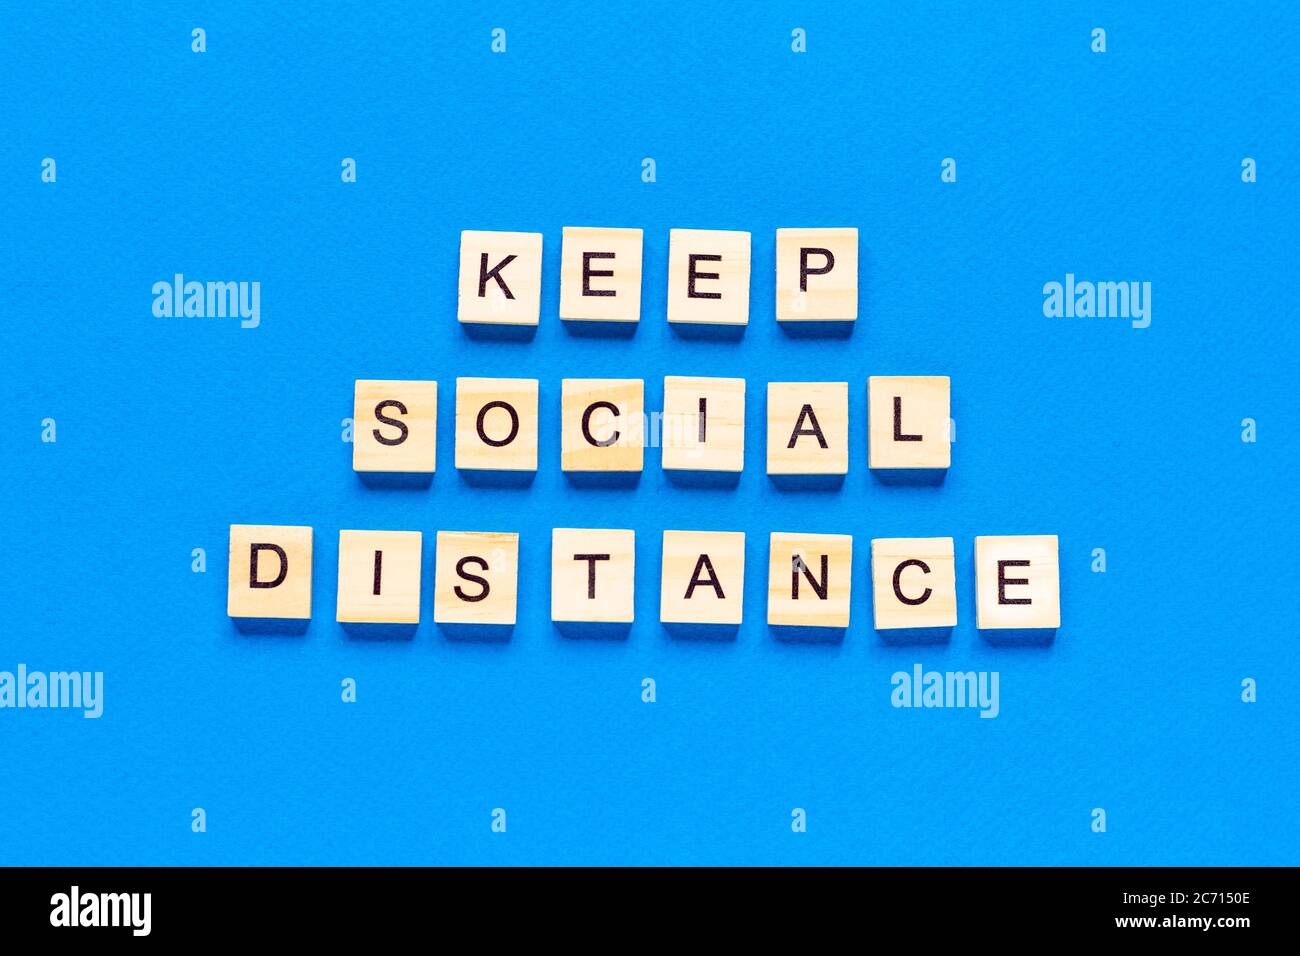 Worte halten soziale Distanz. Holzbeschriftung auf blauem Hintergrund. Informationszeichen von Halten Sie soziale Distanz von Blöcken auf blauem Hintergrund. Top vi Stockfoto